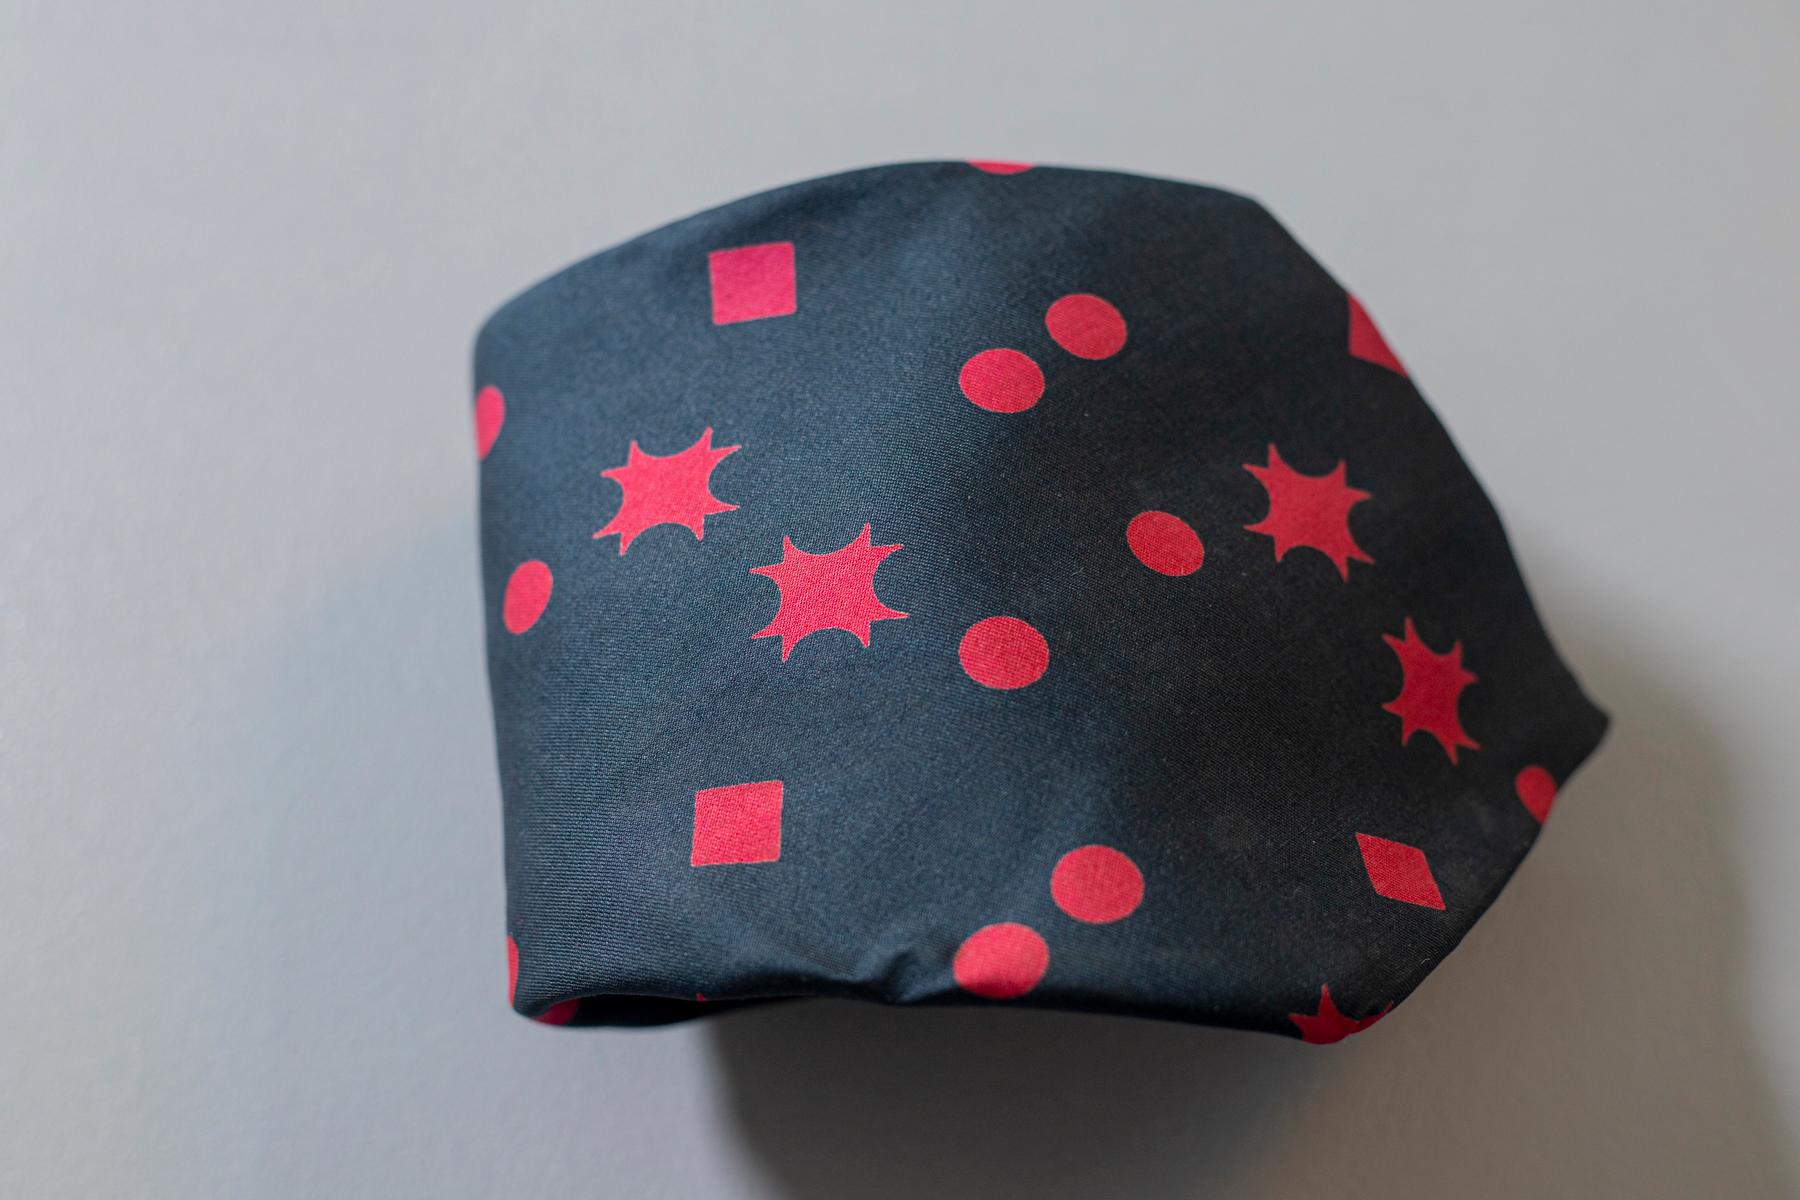 Cravate vintage conçue par Piere D'Albye, elle est faite de 100% soie, décorée de petites formes géométriques rouges sur un fond bleu. Idéal pour un cocktail entre amis, nous vous conseillons de le combiner avec un costume bleu et une chemise